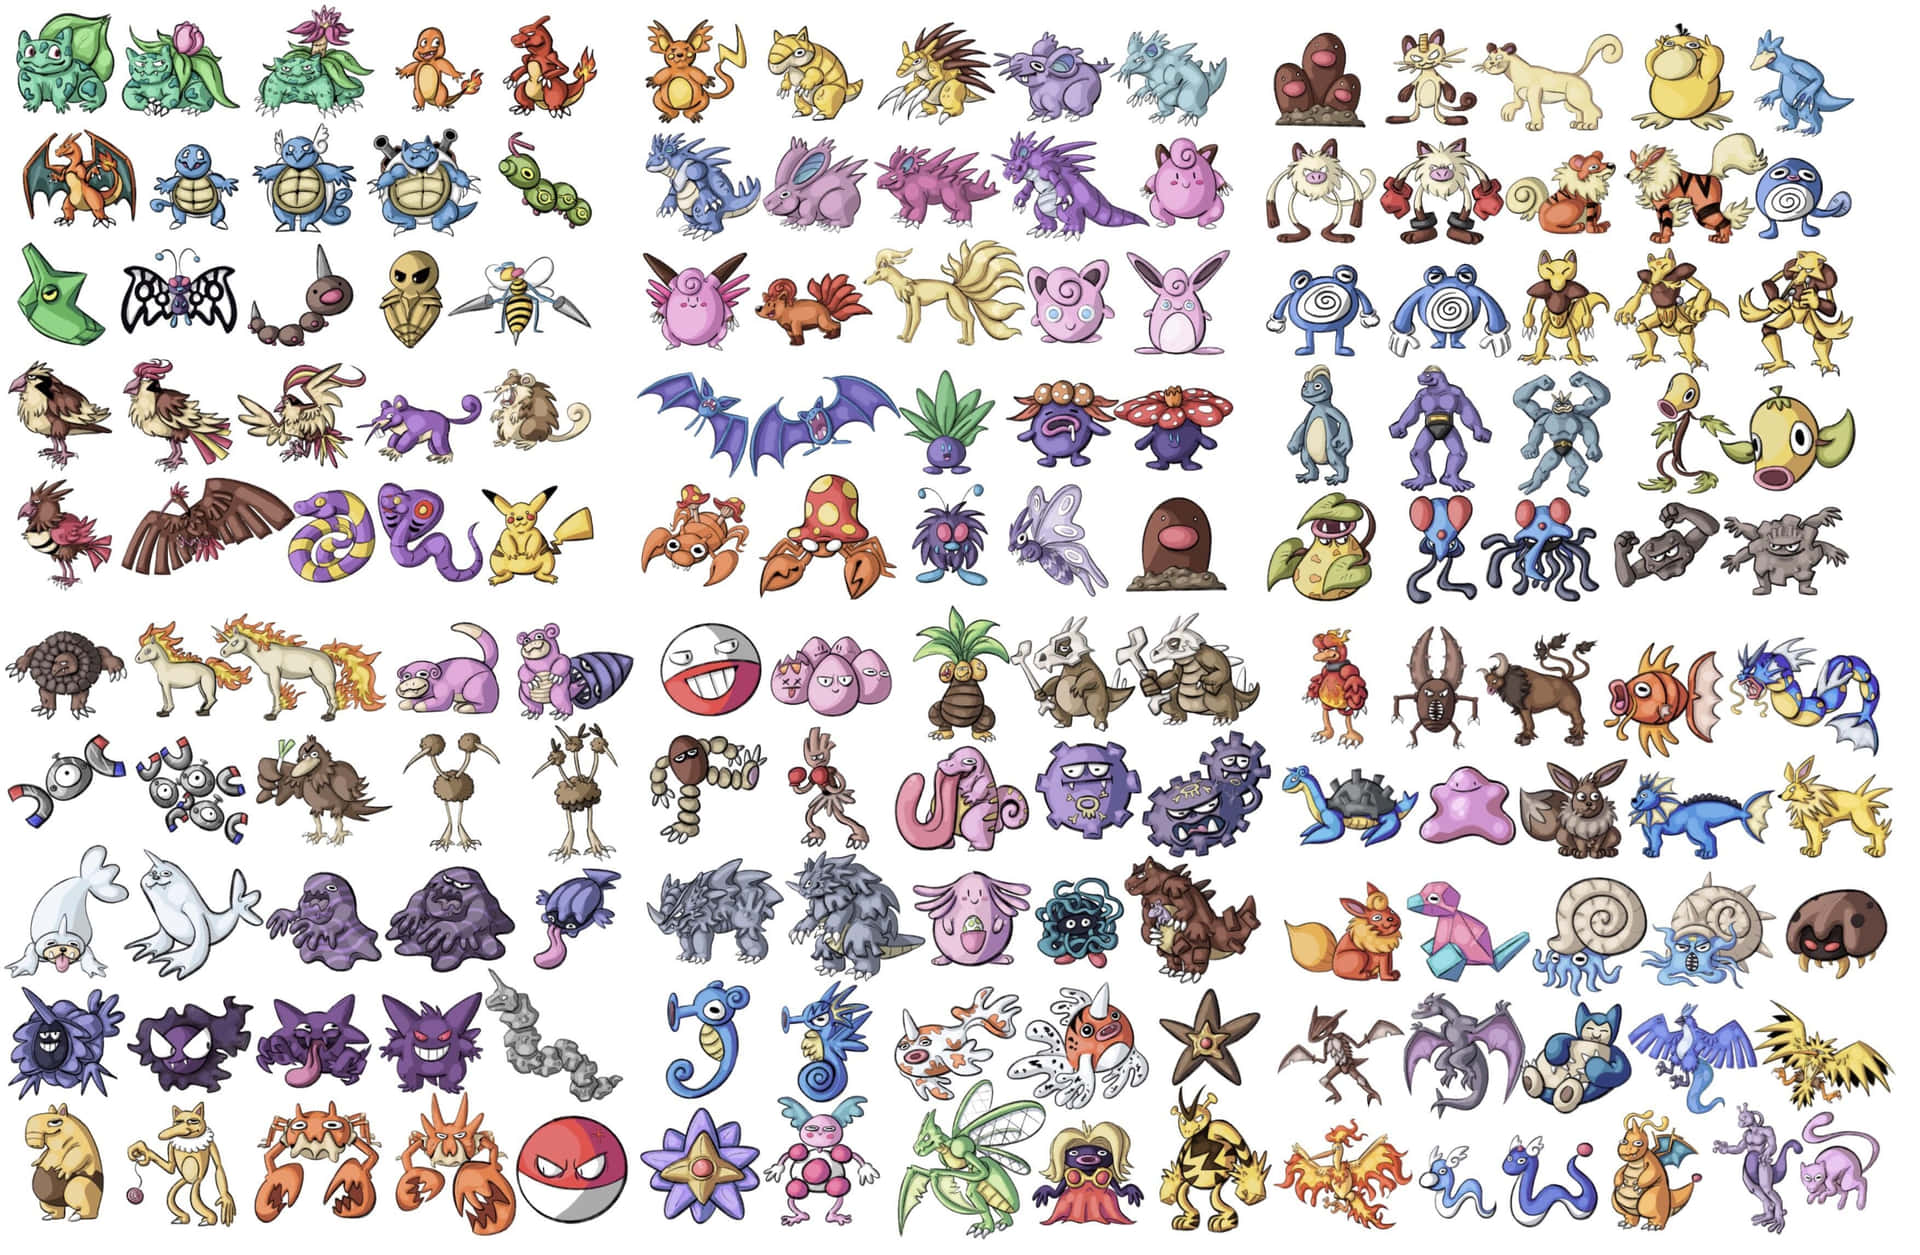 En samling af forskellige pokemon-karakterer